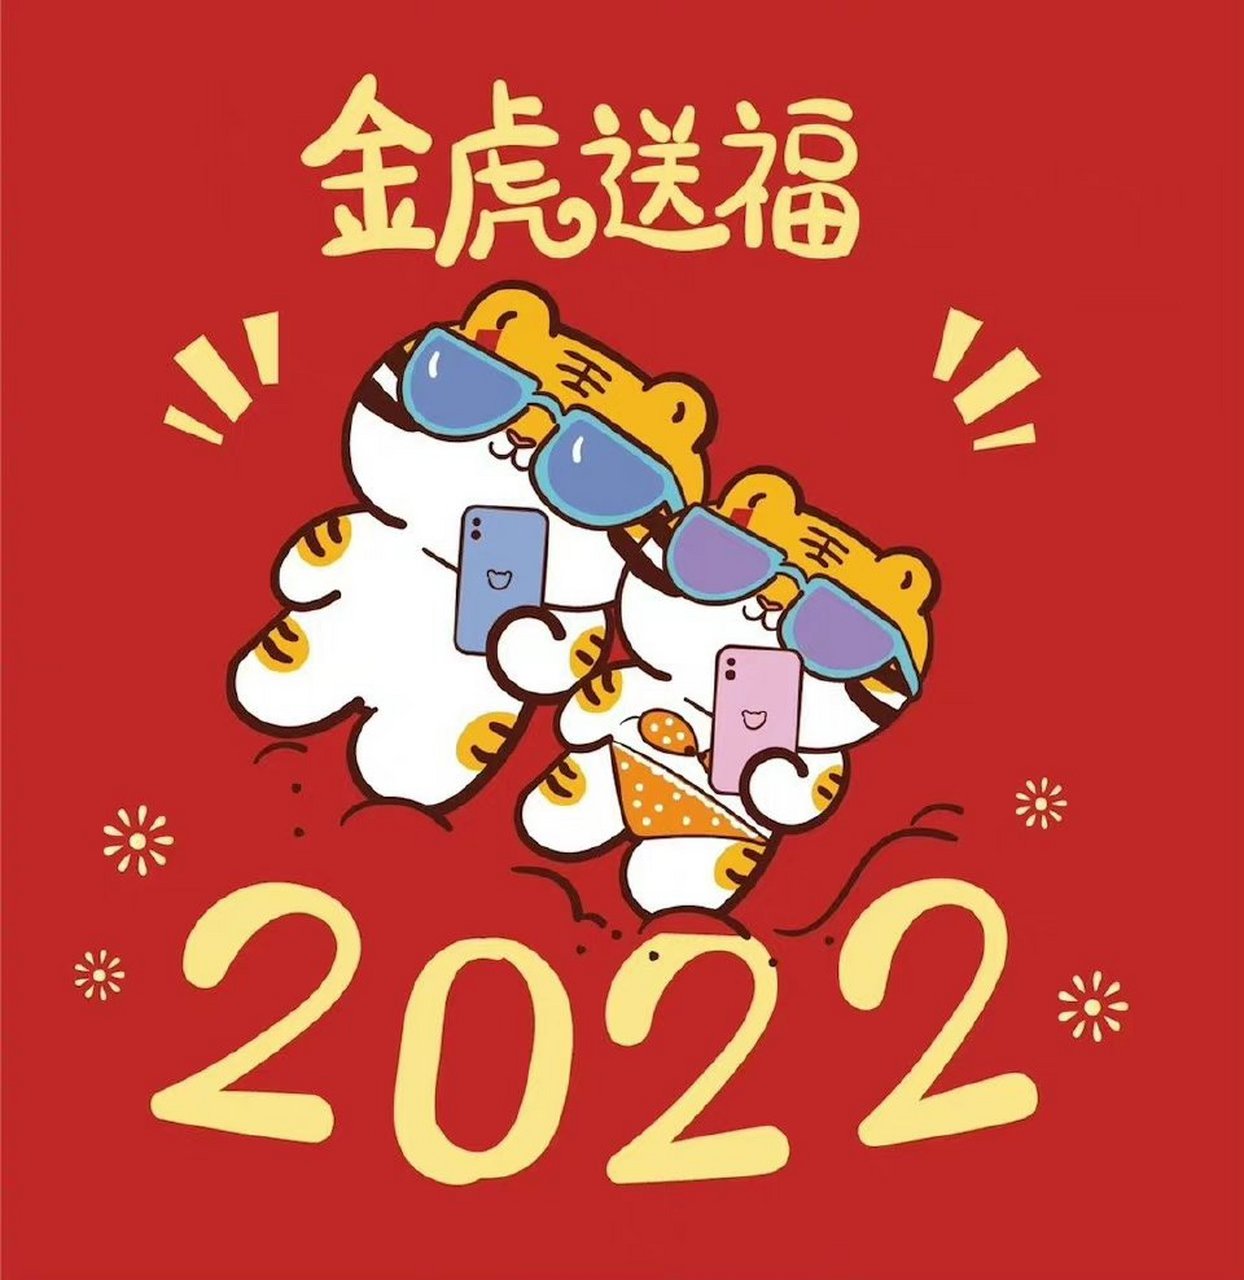 2021跨越2022 yesmv丨2022年的跨年祝福!  1,所爱如山海,烟火伴长明.